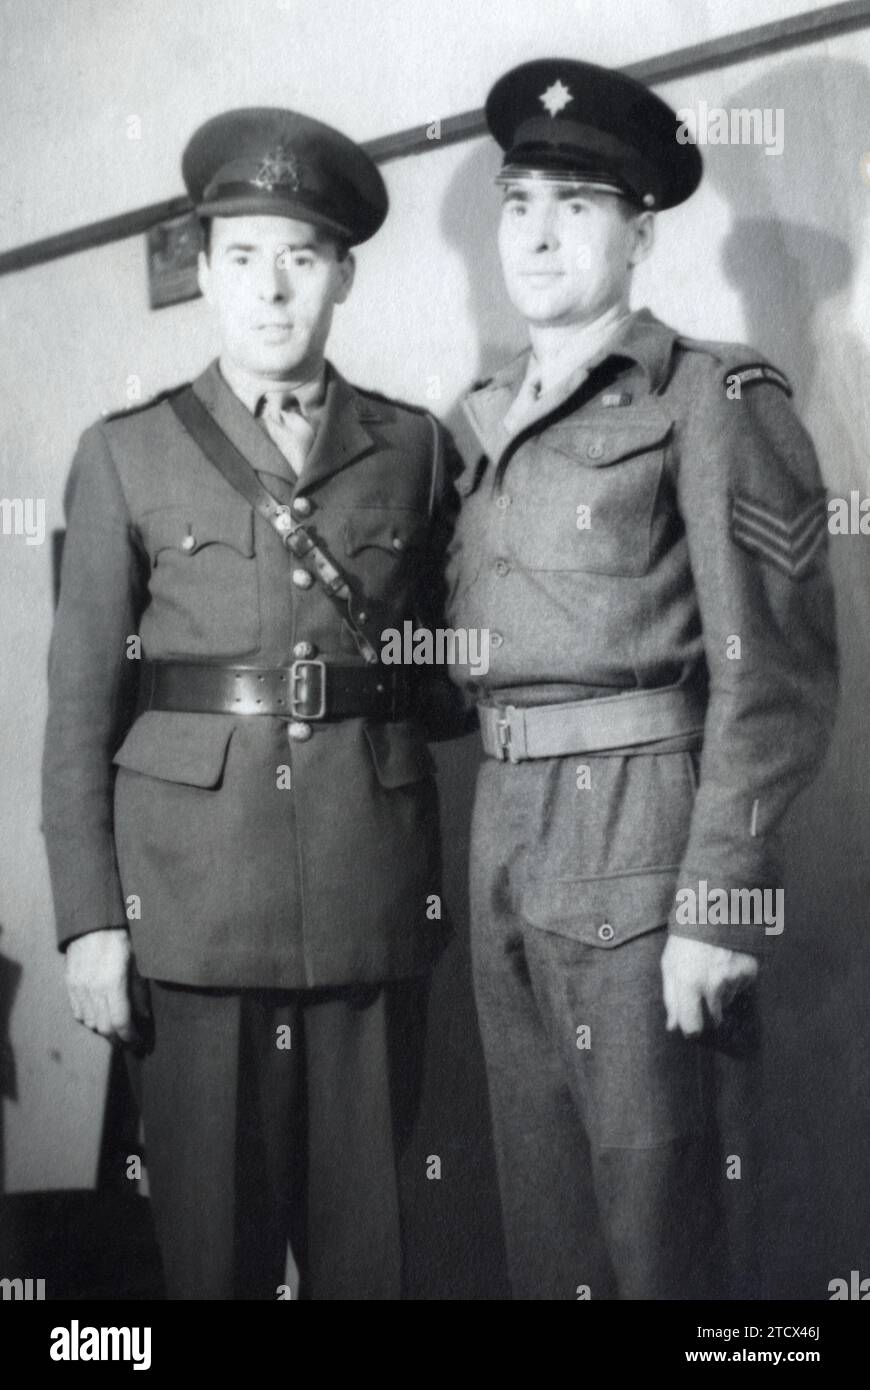 Un ufficiale del British Army General Service Corps con un sergente della Guardia irlandese, preso in Germania, c. 1945-1946. Foto Stock